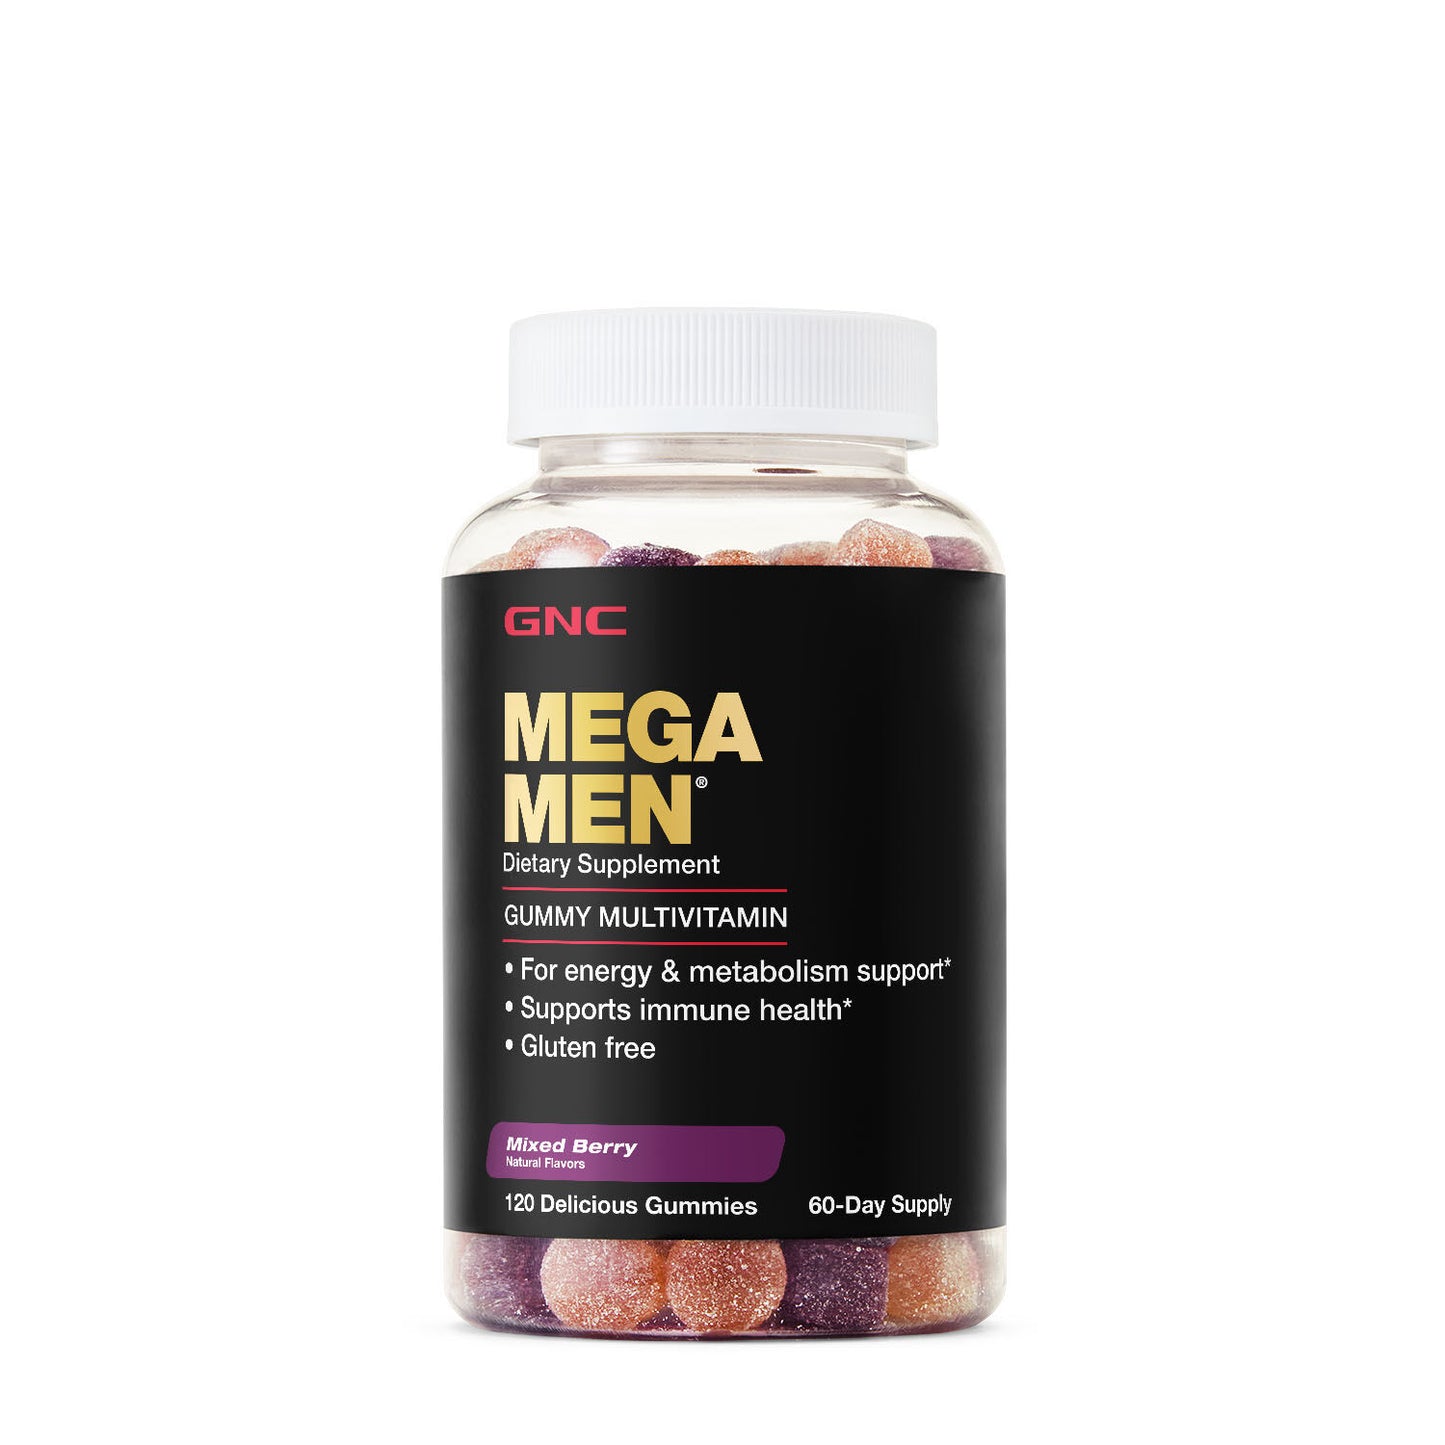 GNC Mega Men® Gummy Multivitamin - Mixed Berry